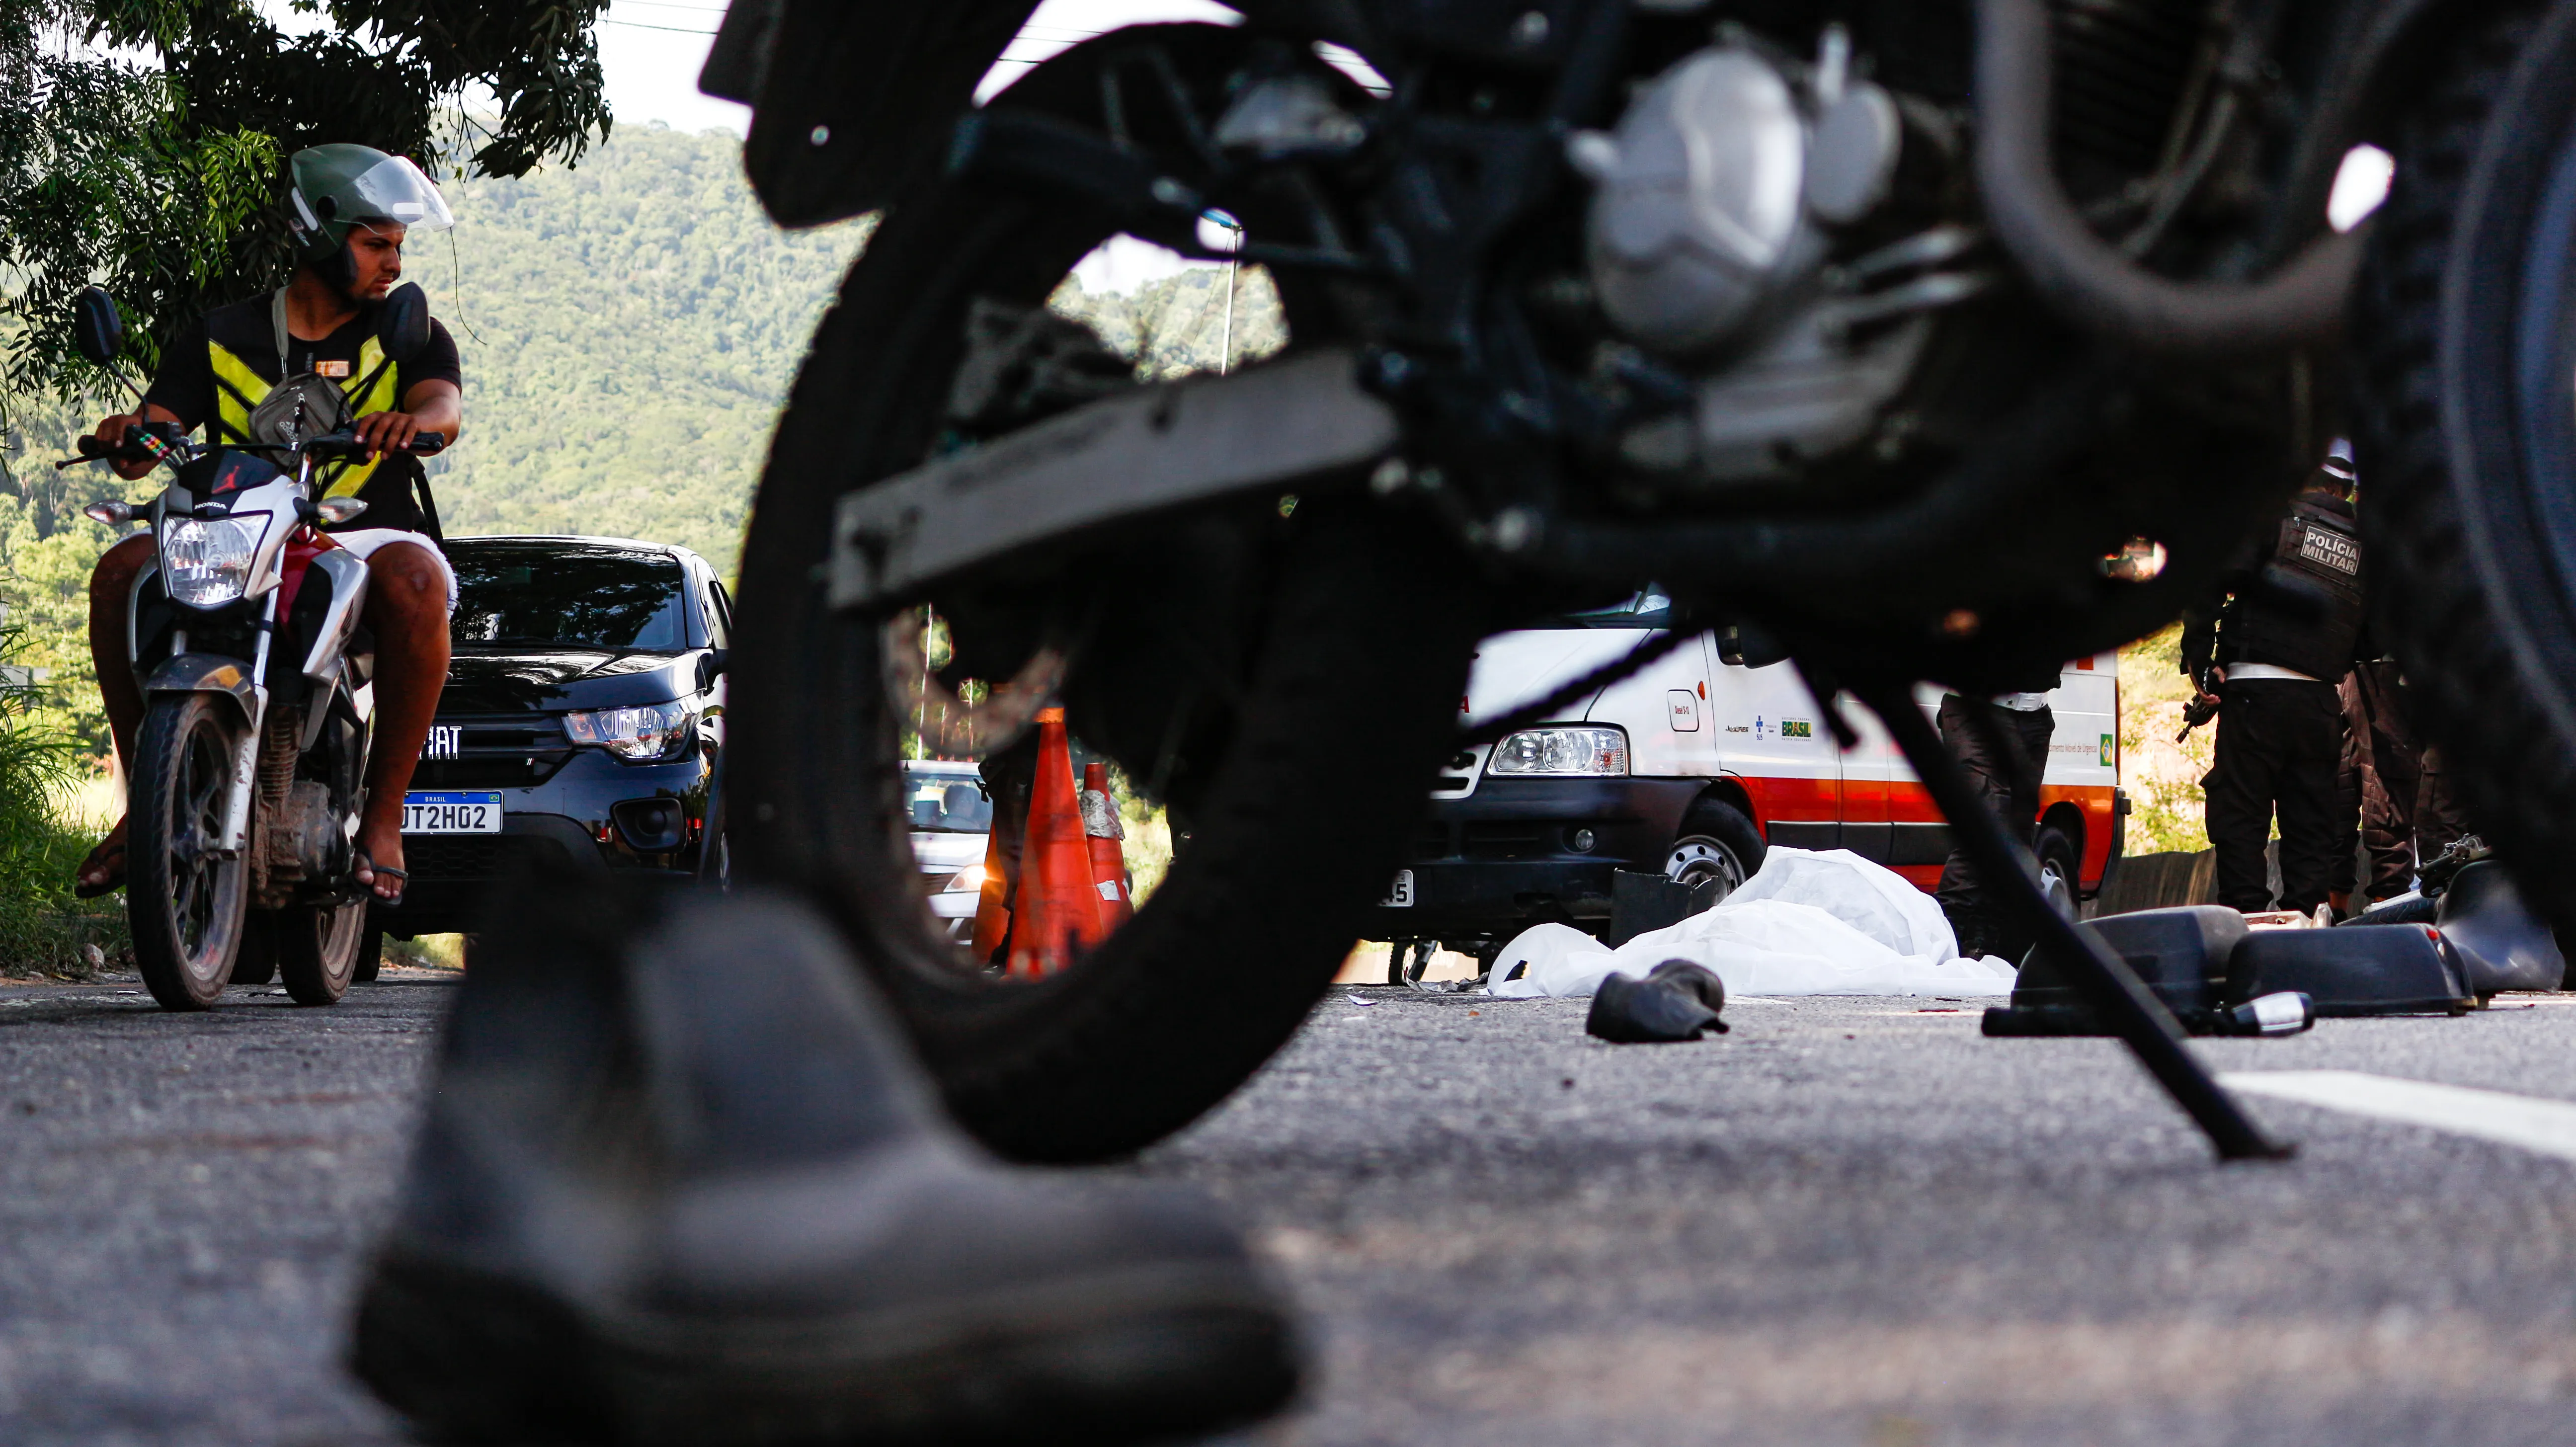 Motociclista morreu atropelado por caminhão na RJ-104, em Niterói, no dia 17 de janeiro